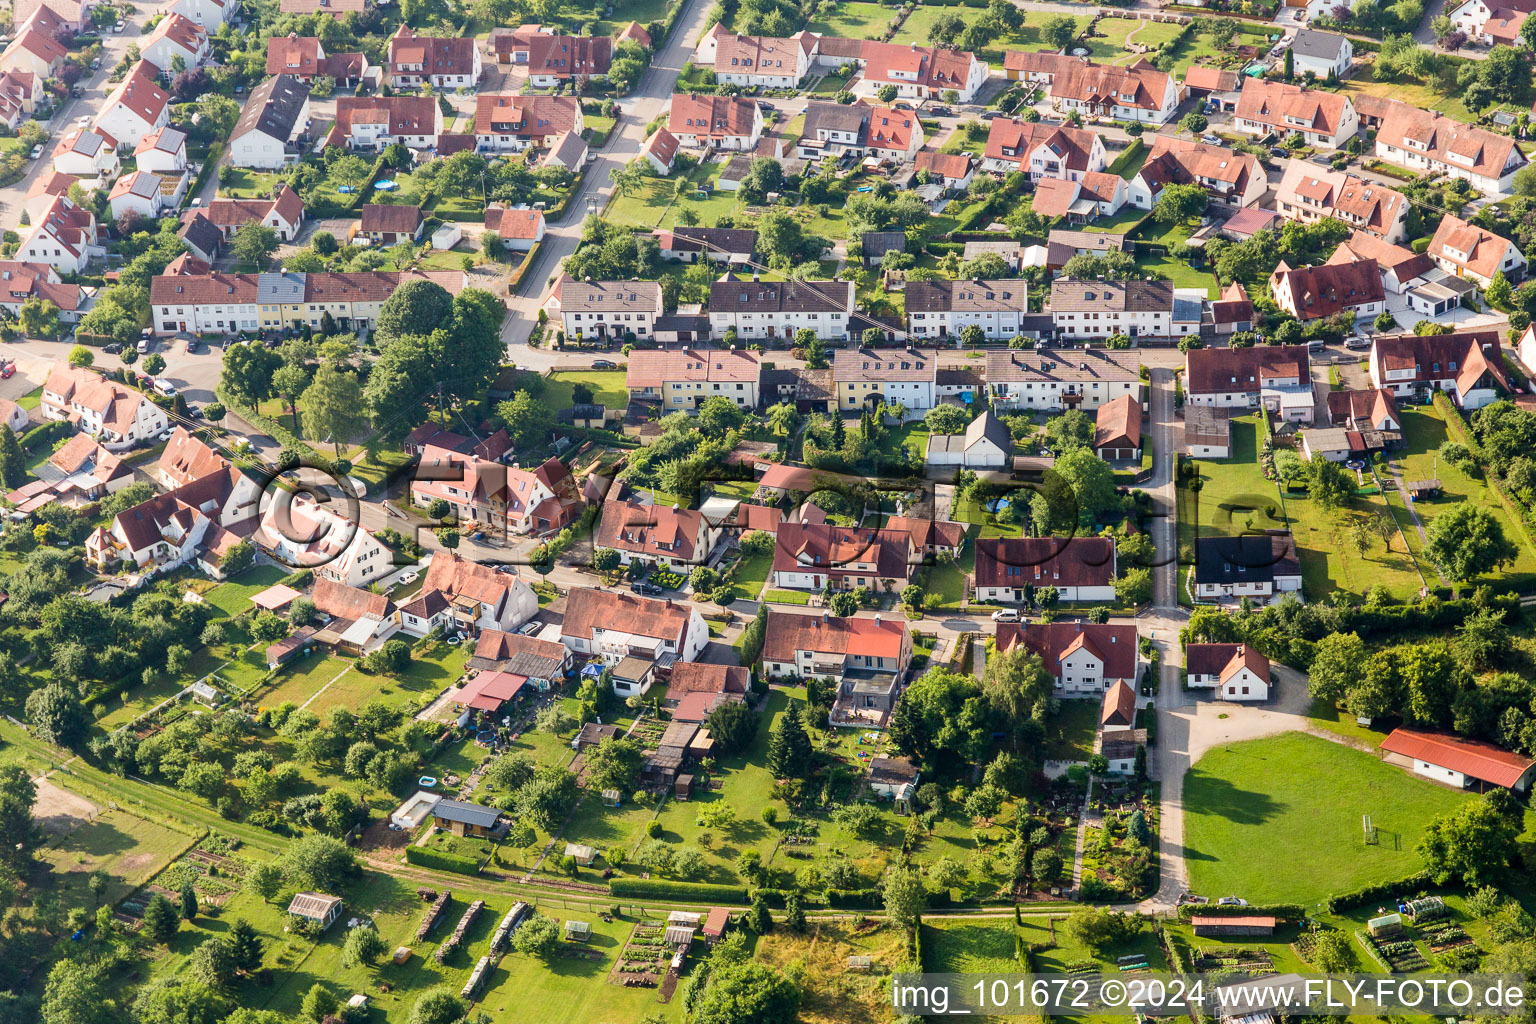 Luftbild von Siedlungsgebiet im Ortsteil Riedlingen in Donauwörth im Bundesland Bayern, Deutschland